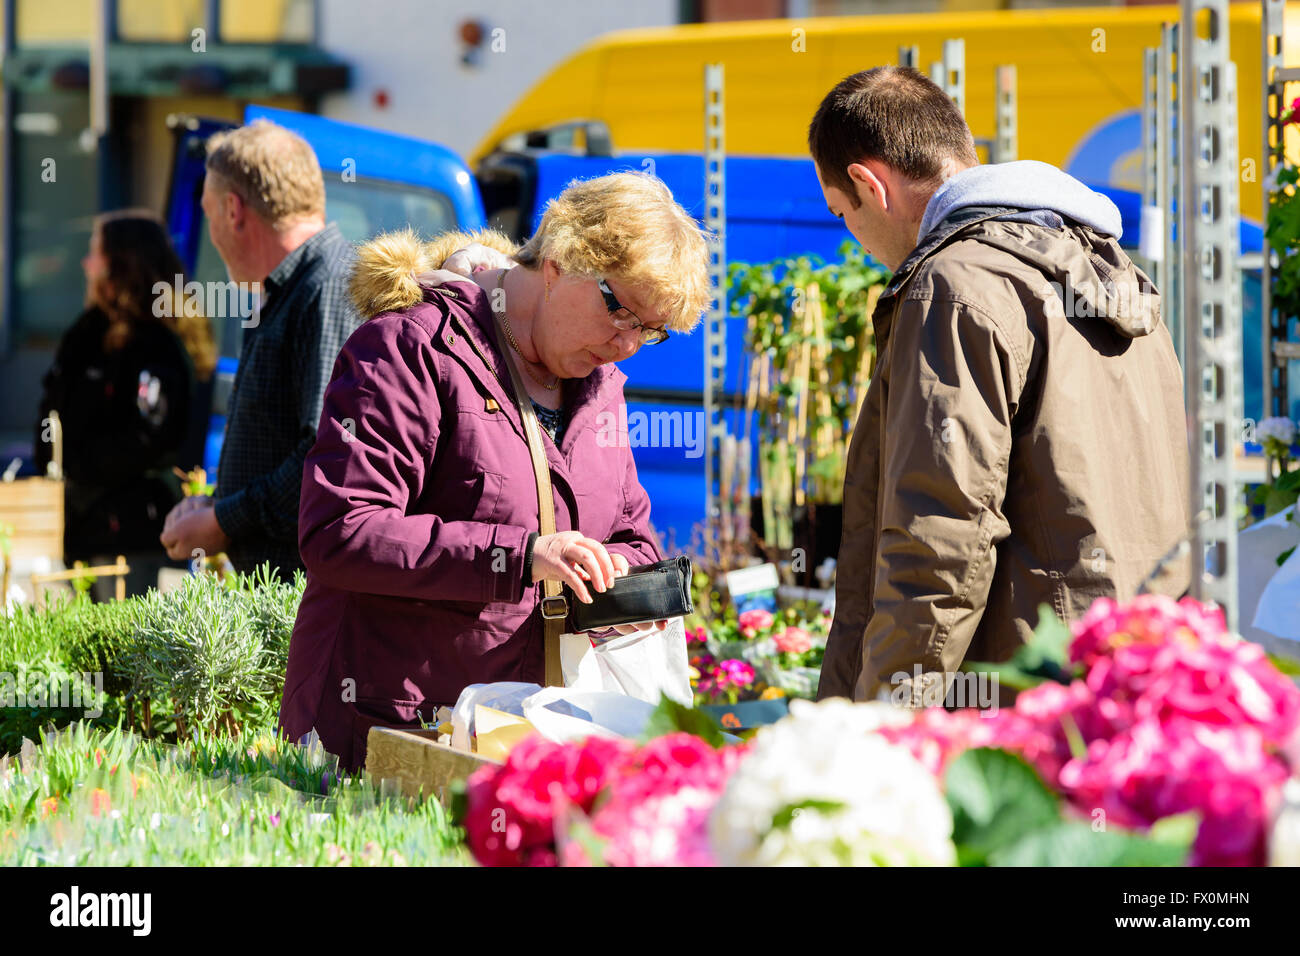 Simrishamn, Schweden - 1. April 2016: Senior Woman ist bezahlen für etwas, auf der Suche nach Bargeld in ihrem Portemonnaie. Männliche Verkäufer wartet Stockfoto